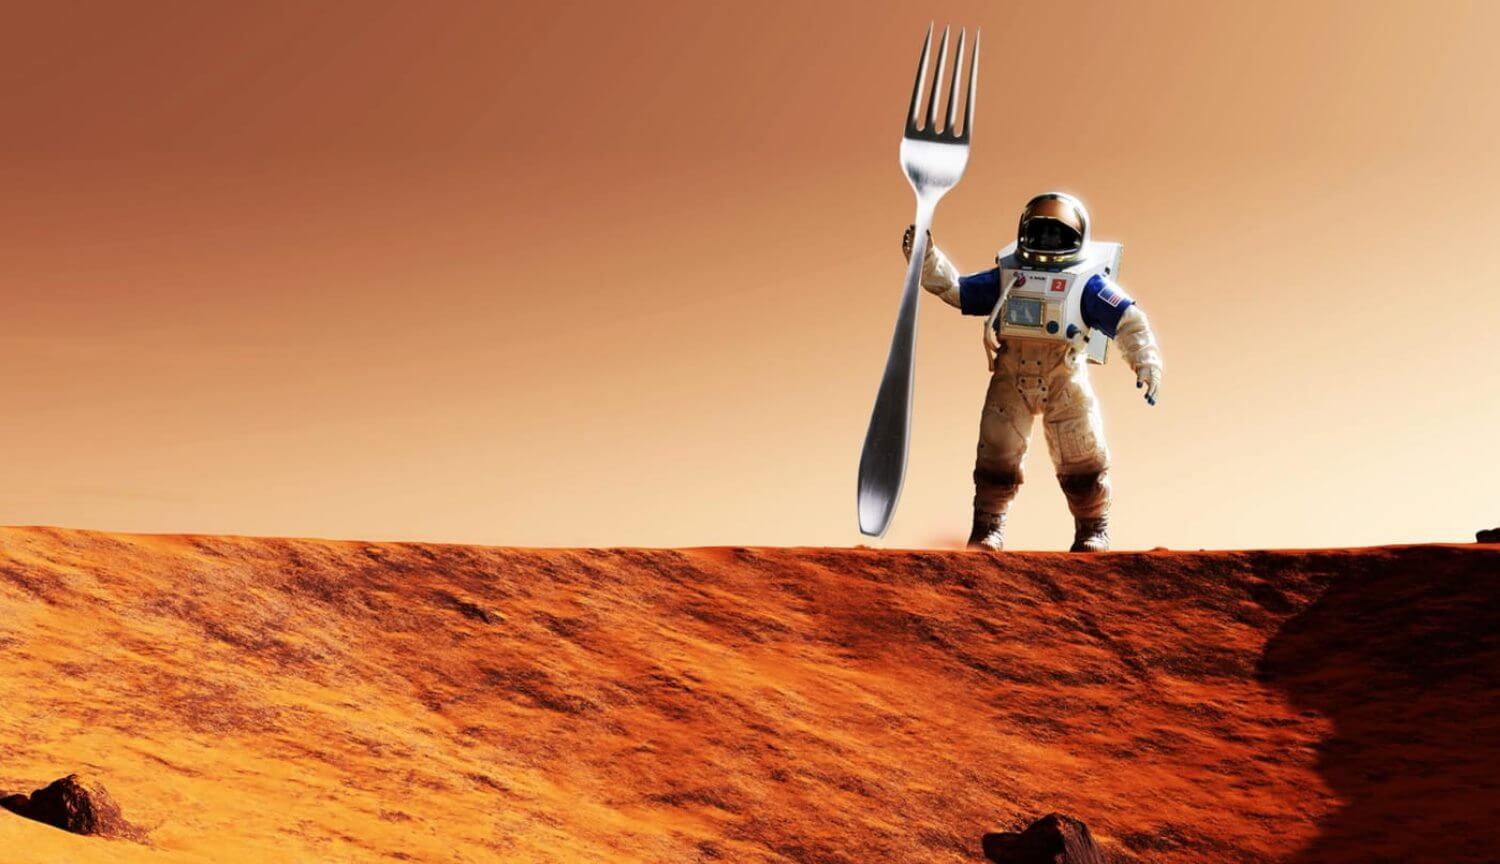 आप की जरूरत है, खाने और पीने के लिए जीवित रहने के लिए मंगल ग्रह पर?